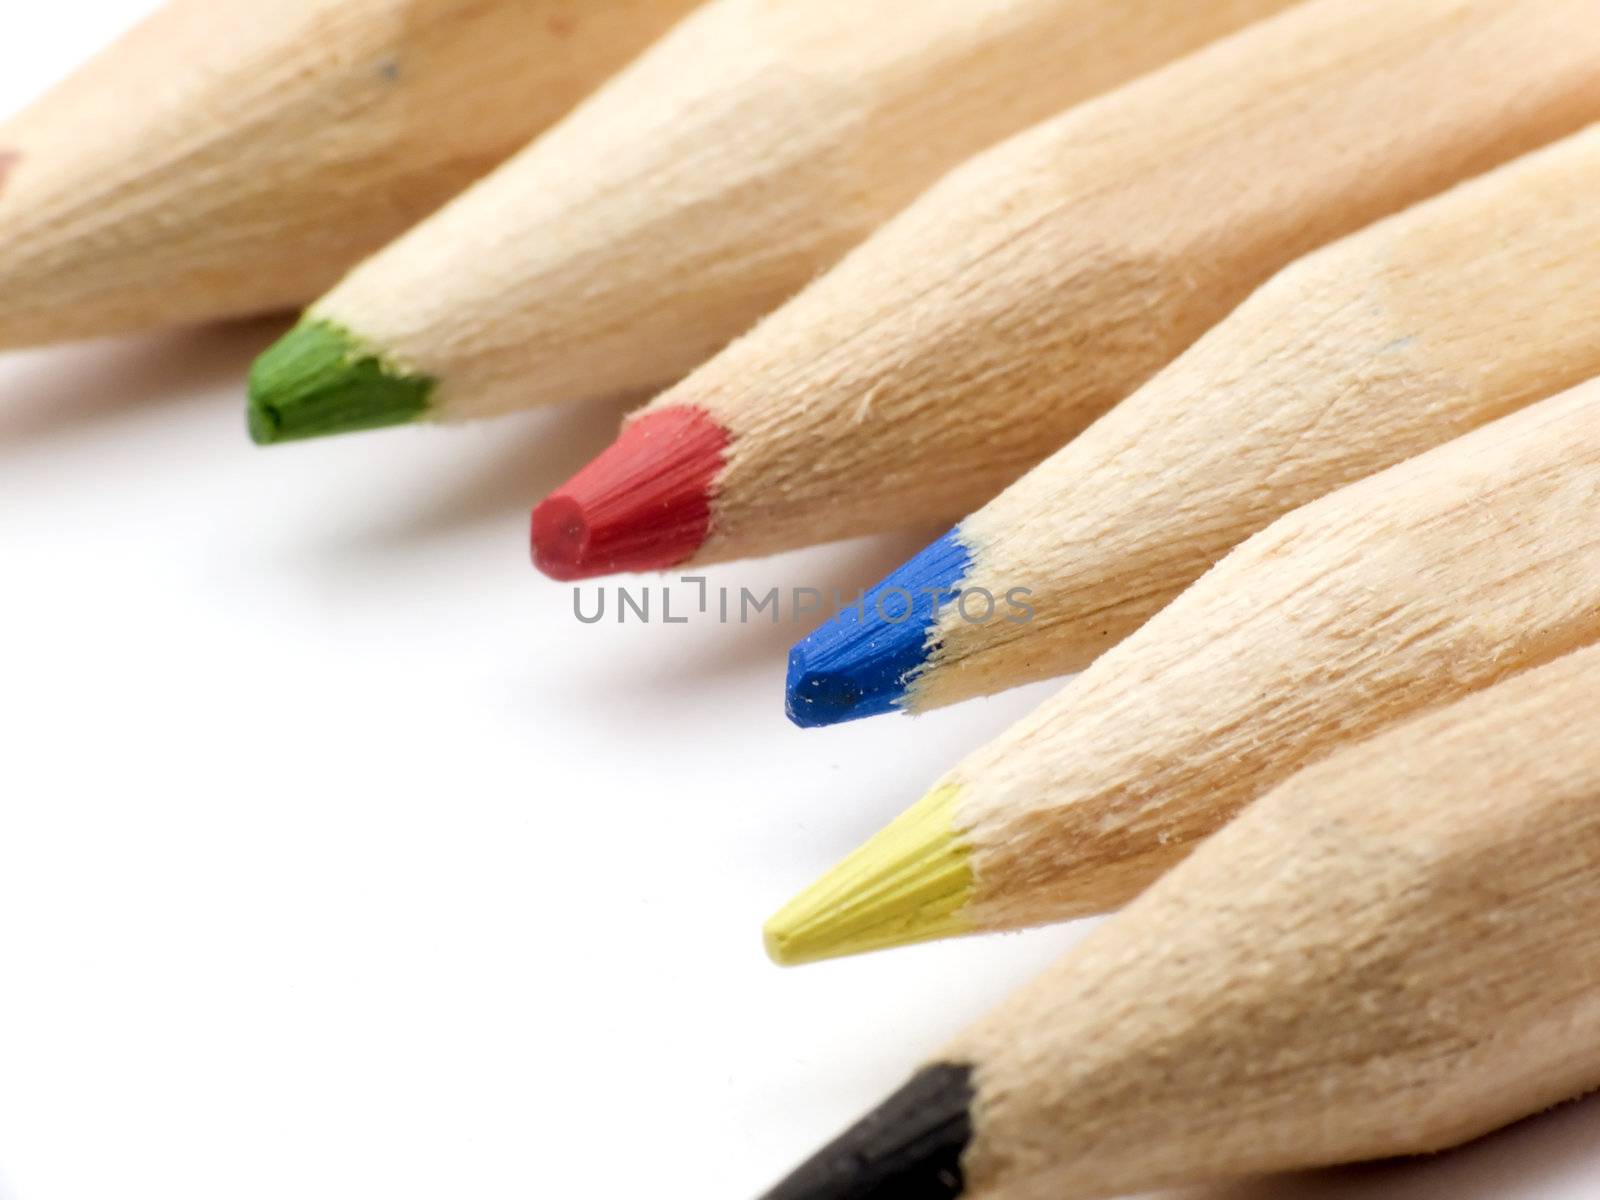 Pencil tips by devulderj